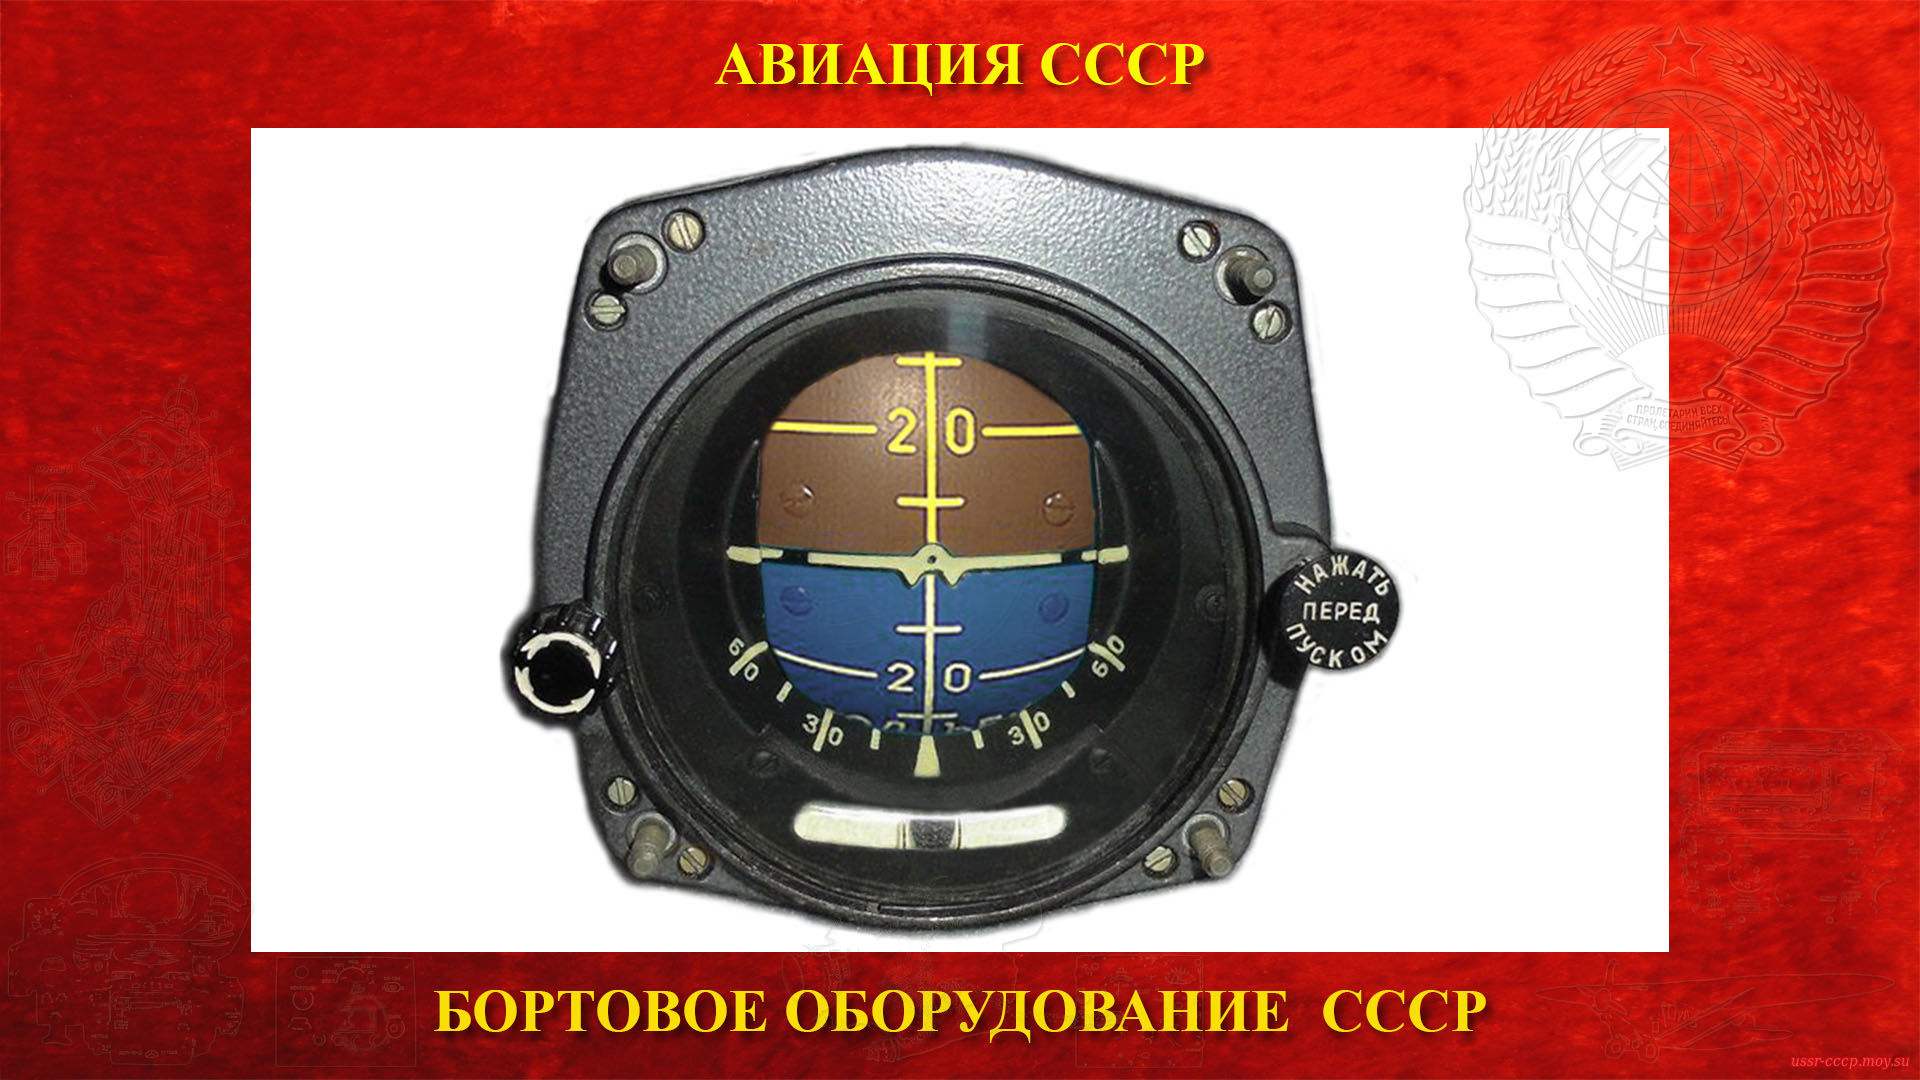 АГИ-1С — Авиагоризонт — Гироскопический прибор СССР